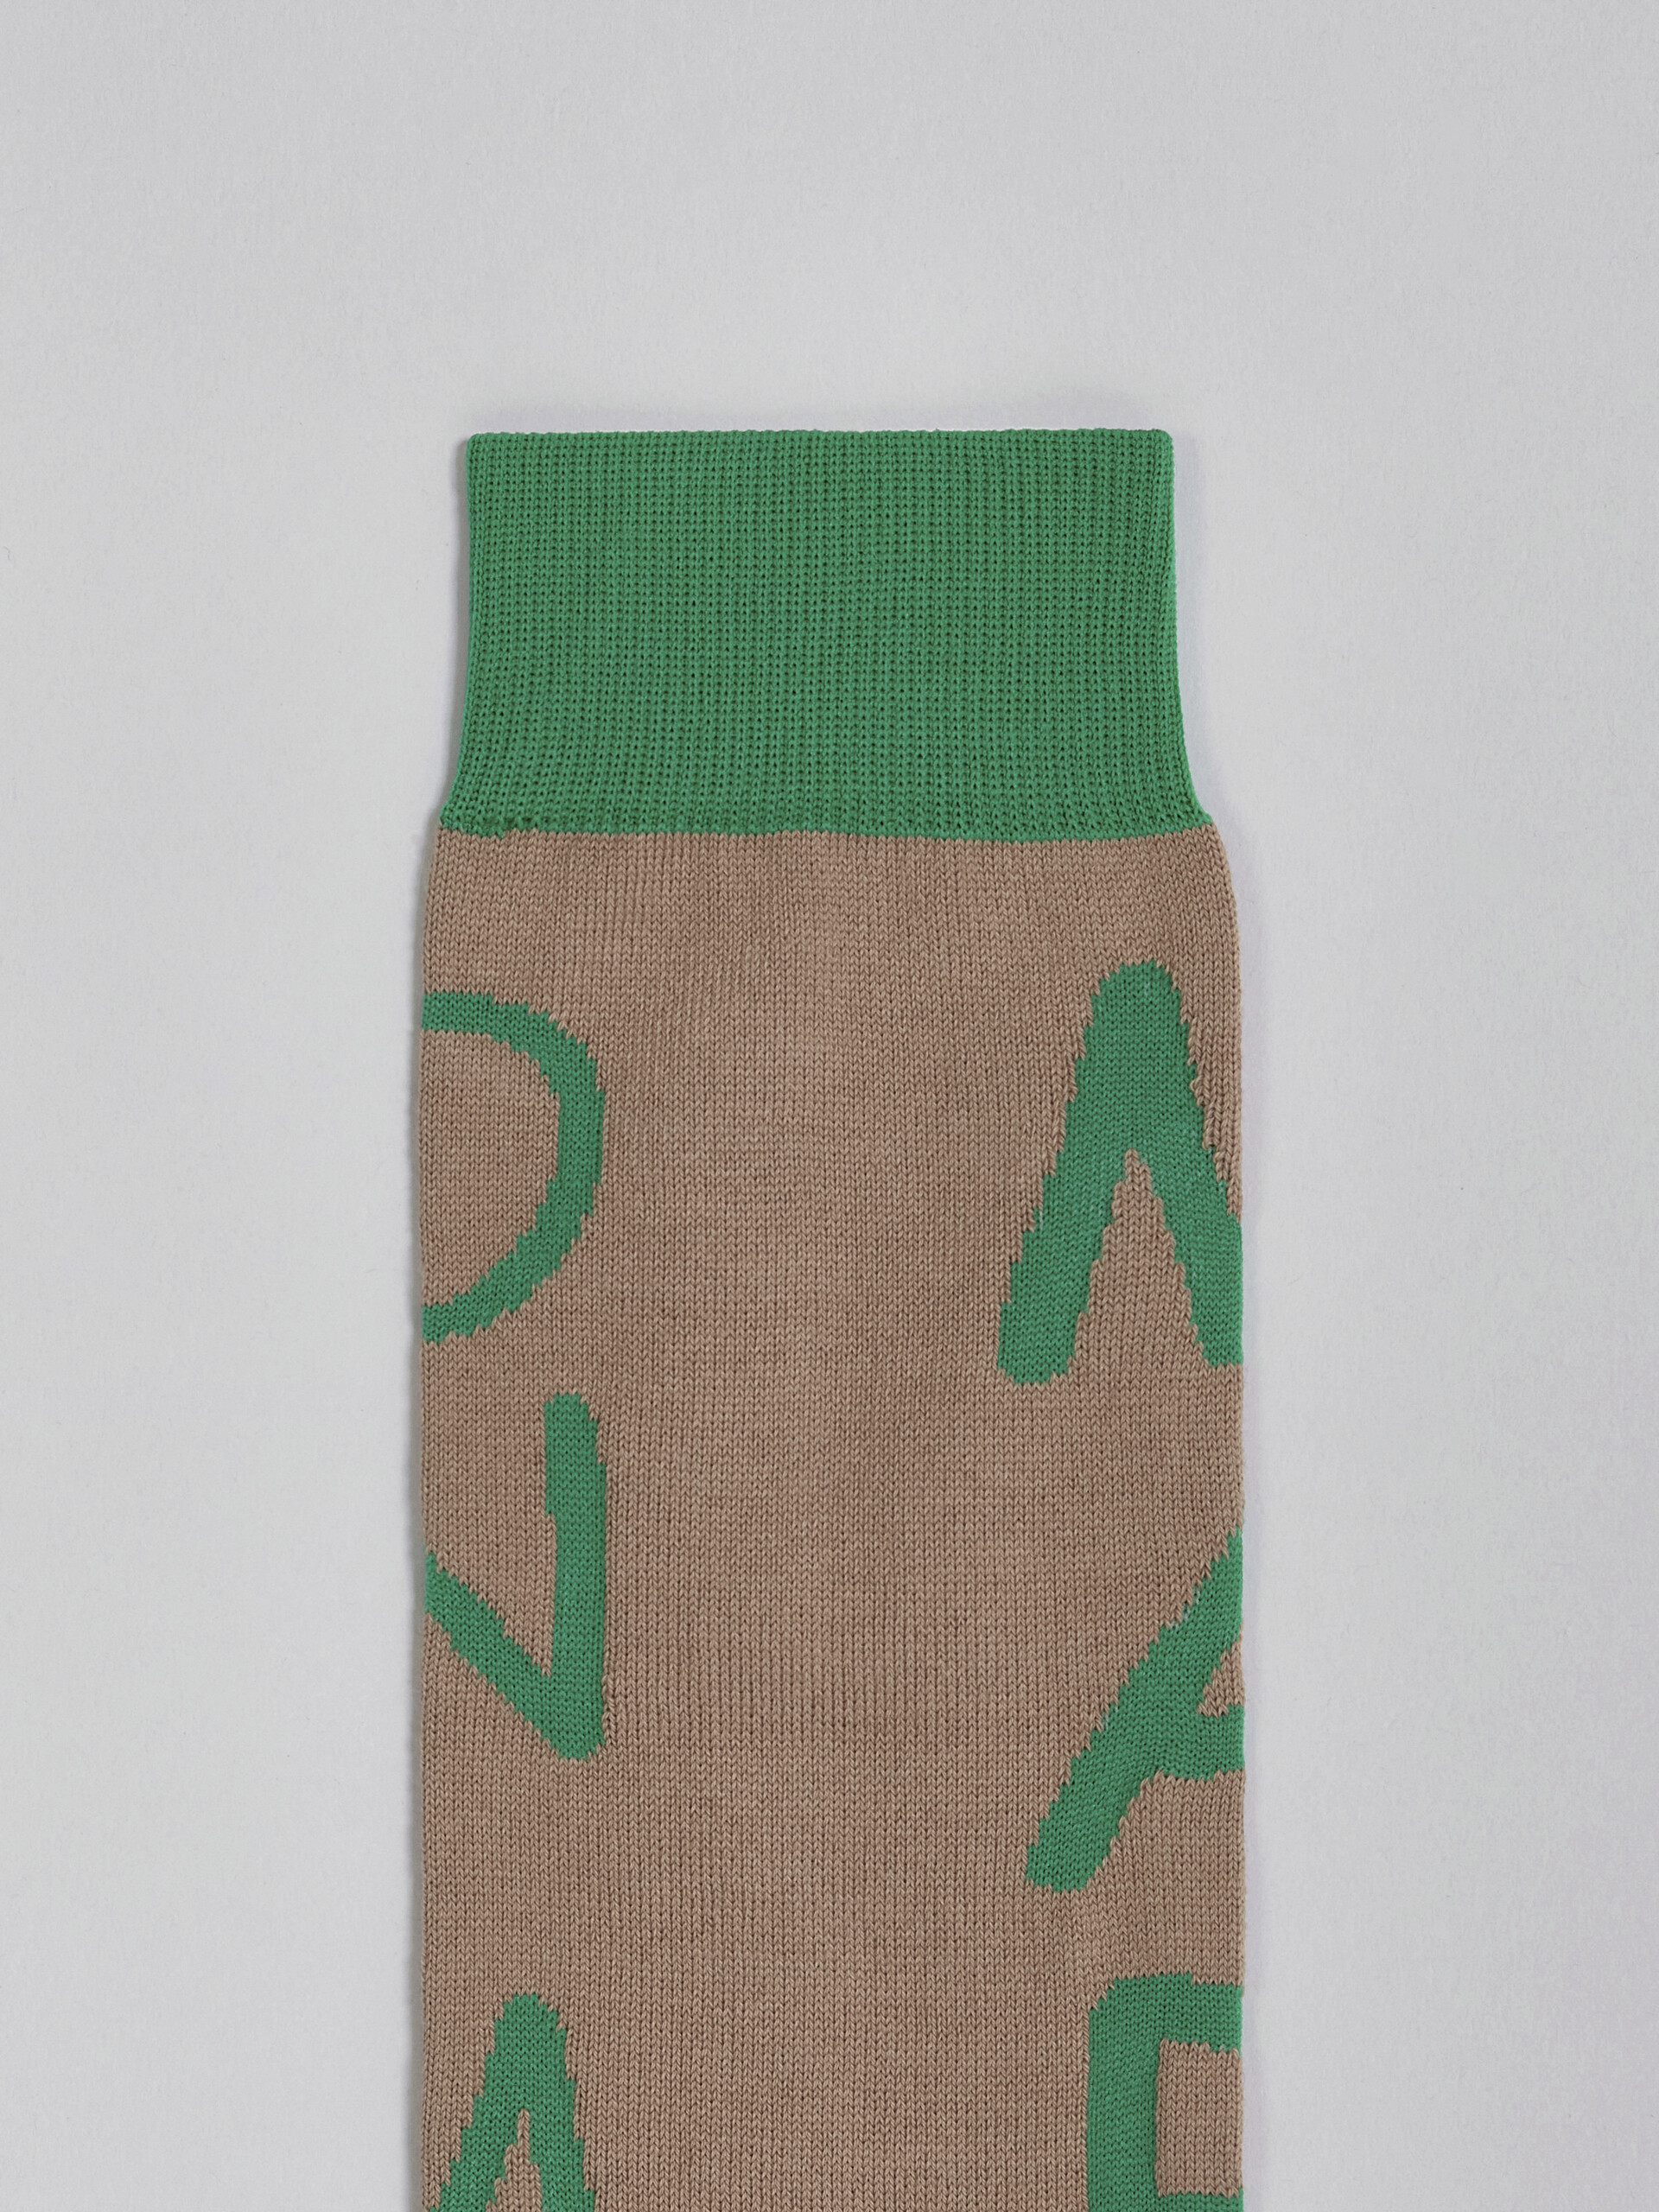 Beige MARNI ON ME cotton and nylon socks - Socks - Image 3